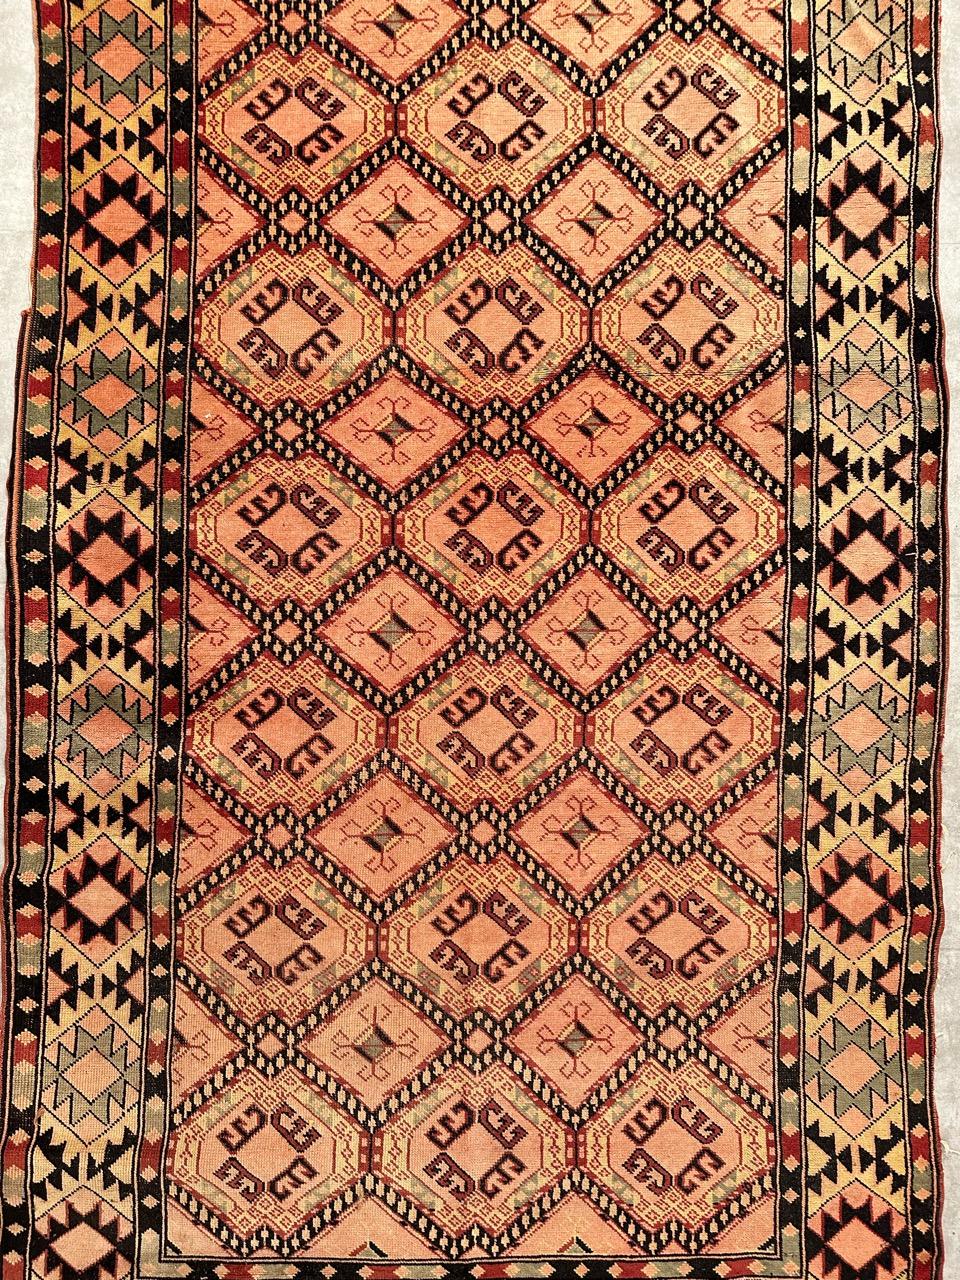 Hübscher türkischer Teppich aus der Mitte des Jahrhunderts mit schönem kaukasischem und geometrischem Design und schönen Farben, vollständig handgeknüpft mit Wollsamt auf Baumwollgrund.

✨✨✨
